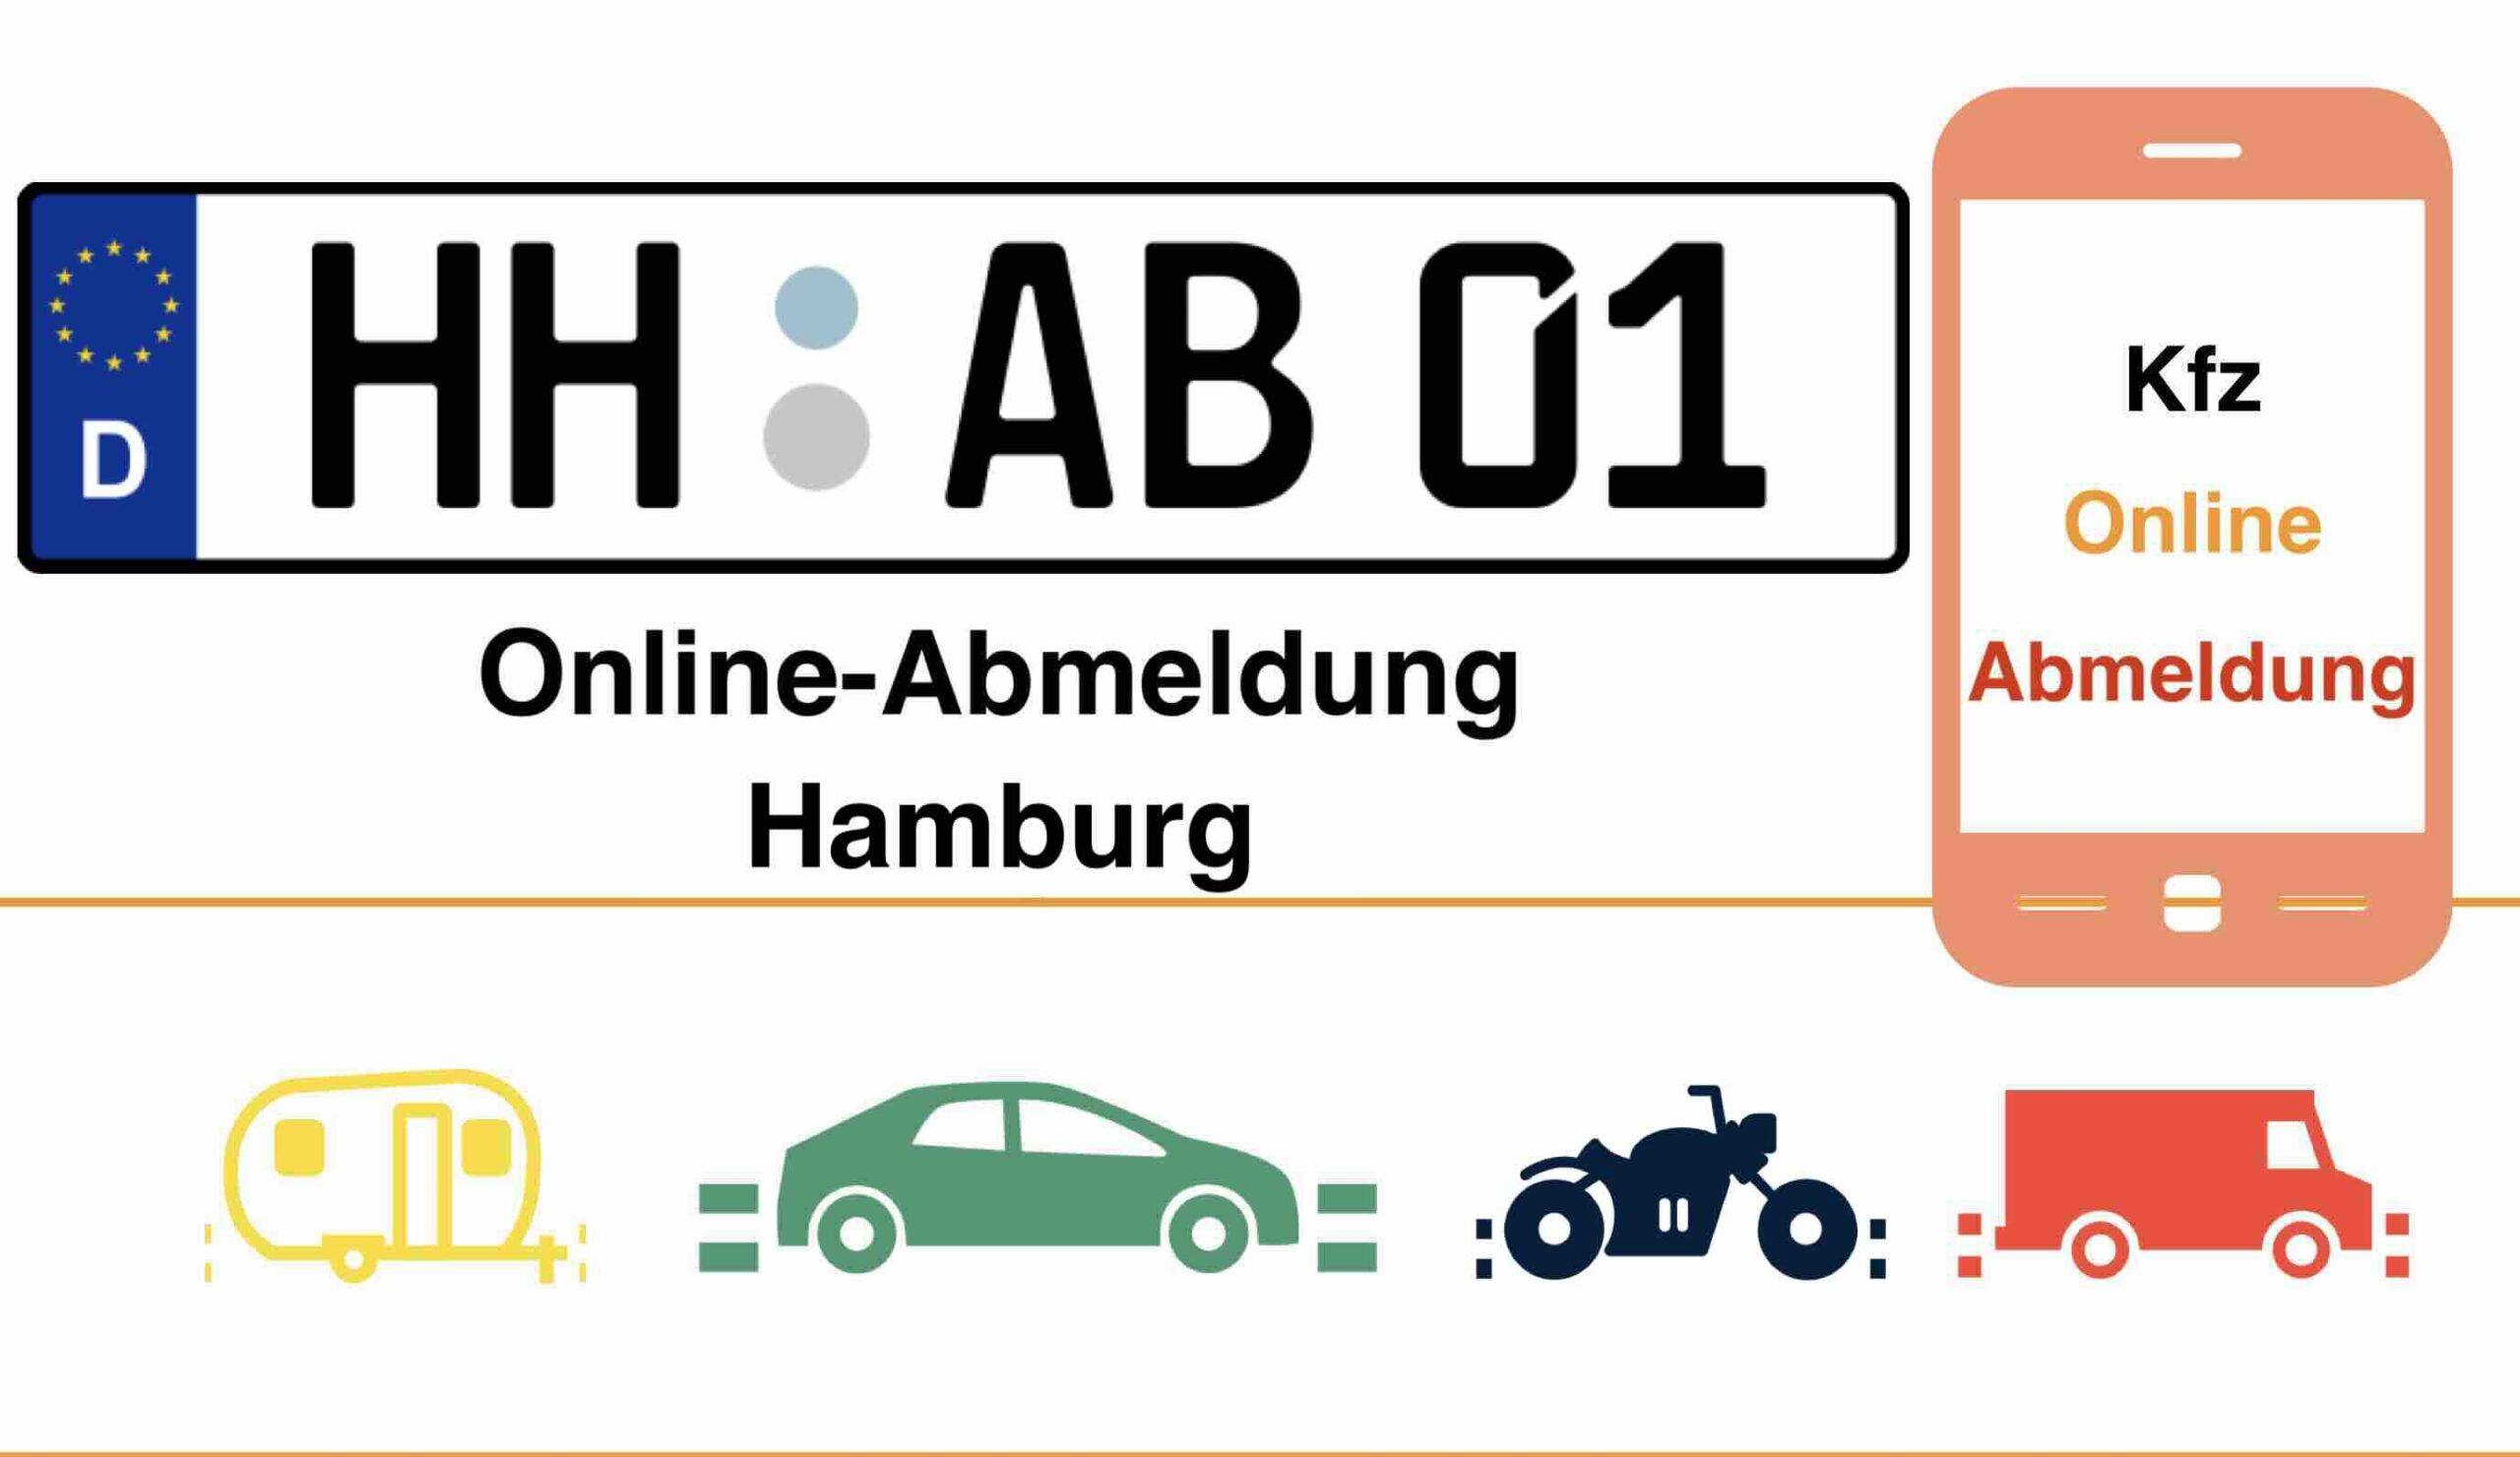 Online-Abmeldung in Hamburg 